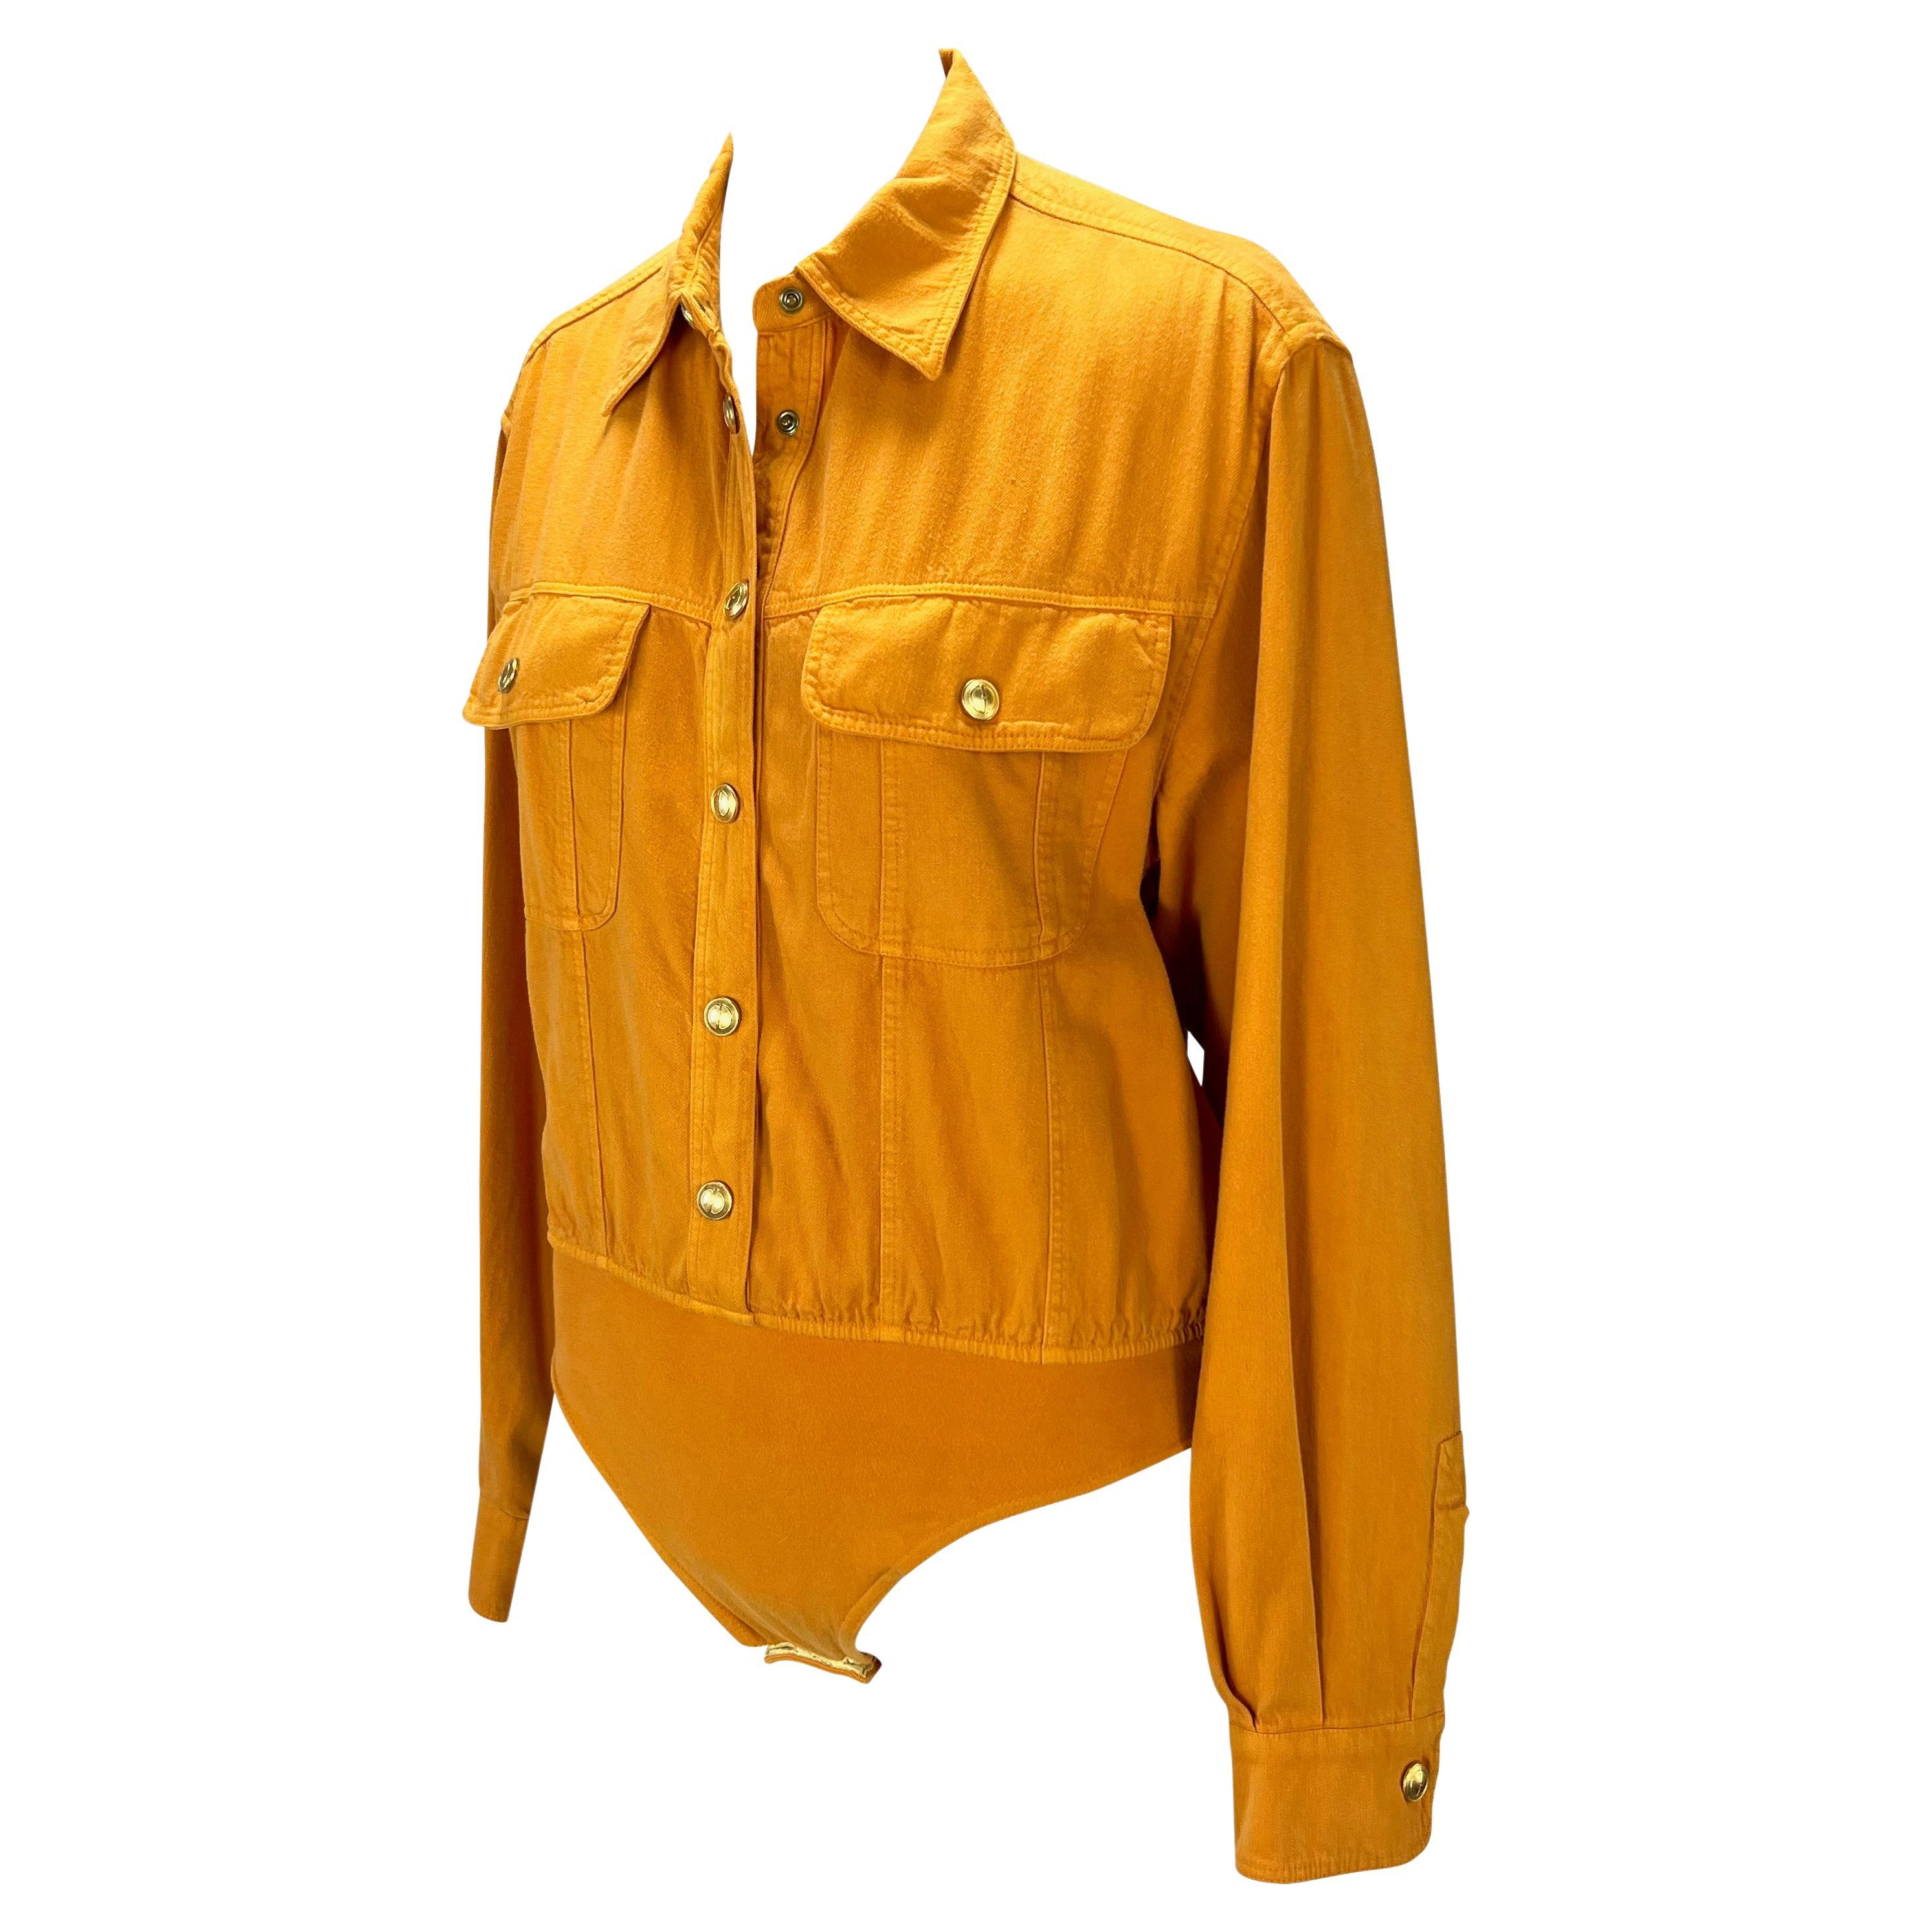 Wir präsentieren ein leuchtend orangefarbenes Gucci-Trikot. Dieses Oberteil aus der Frühjahr/Sommer-Kollektion 1993 ist ein klassisches Button-Down-Hemd mit zwei Brusttaschen und goldenen GG-Knopfverschlüssen. Das Oberteil verfügt über ein dehnbares